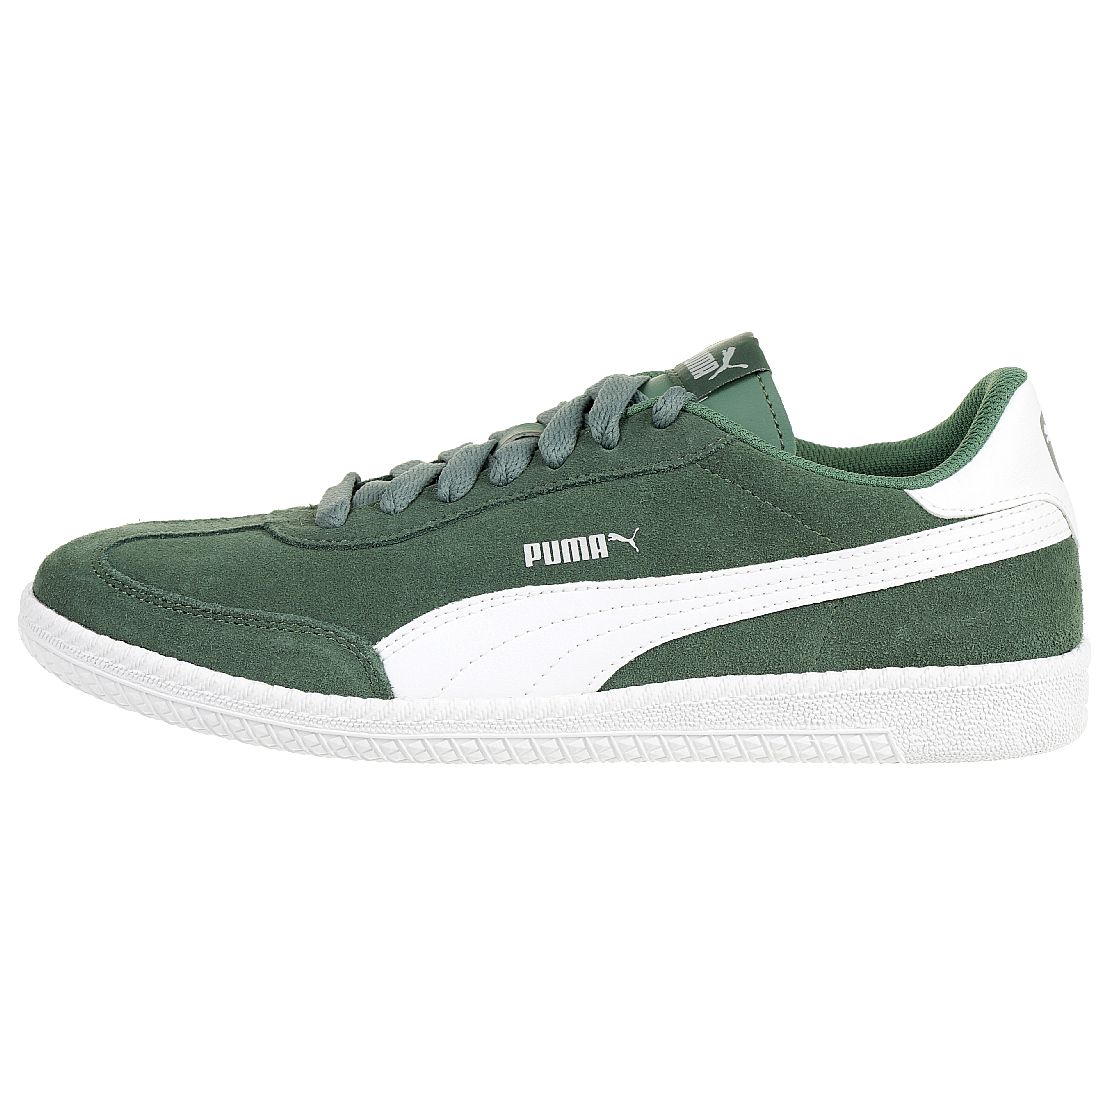 Puma Astro Cup Herren Sneaker Low-Top grün 364423 10